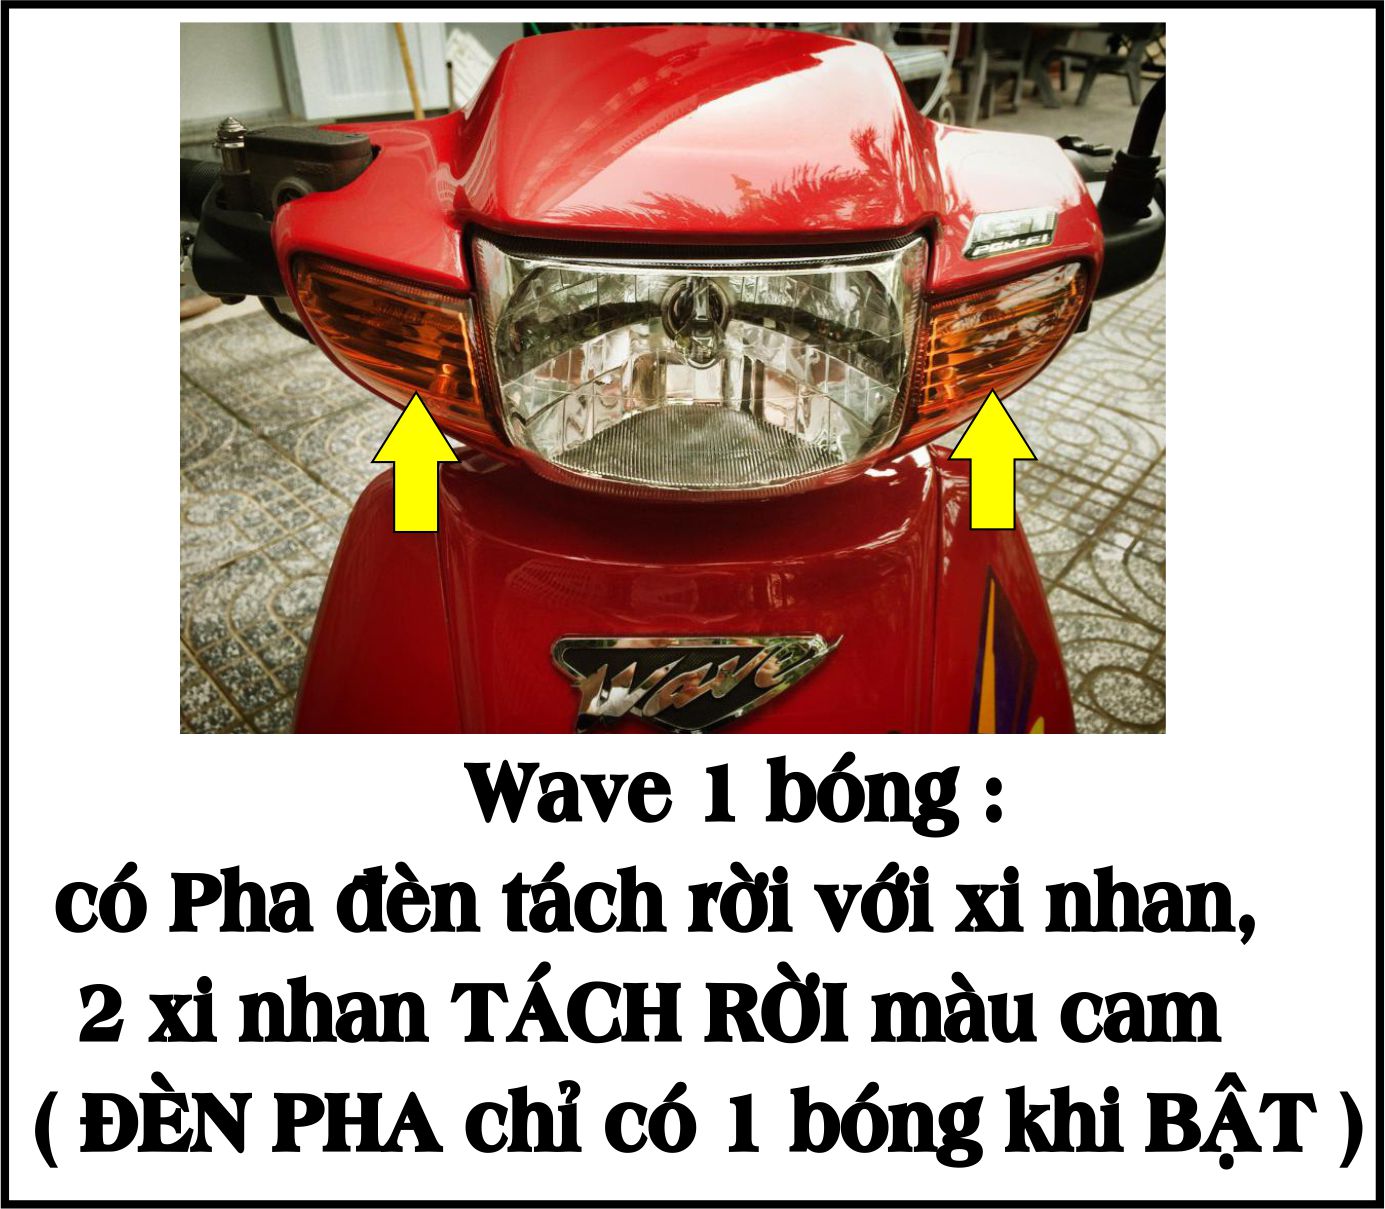 [ TẶNG TEM] Bộ vỏ nhựa màu XANH DA cho xe Wave 110 - Wave  Thái  - Wave Zx đời 1997 đến 2006- TKB-561(8047)